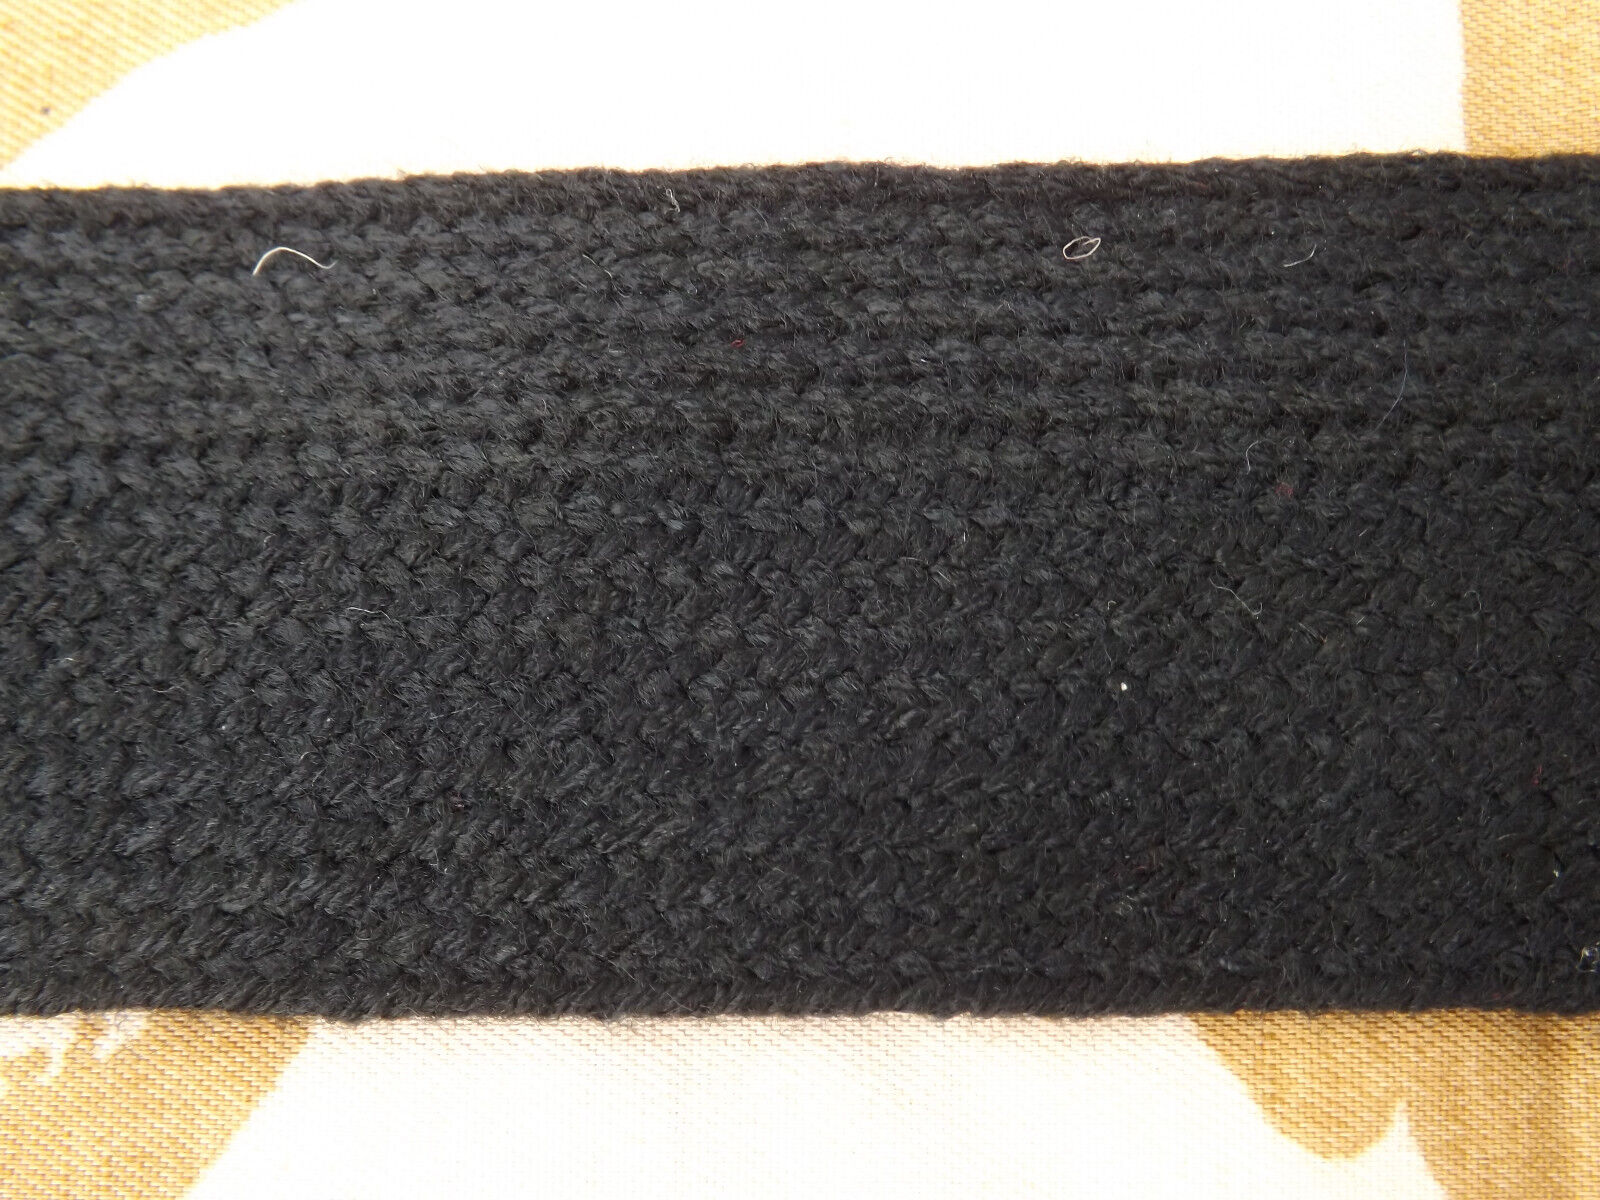 Black Mohair braid 1.75 inch wide per meter